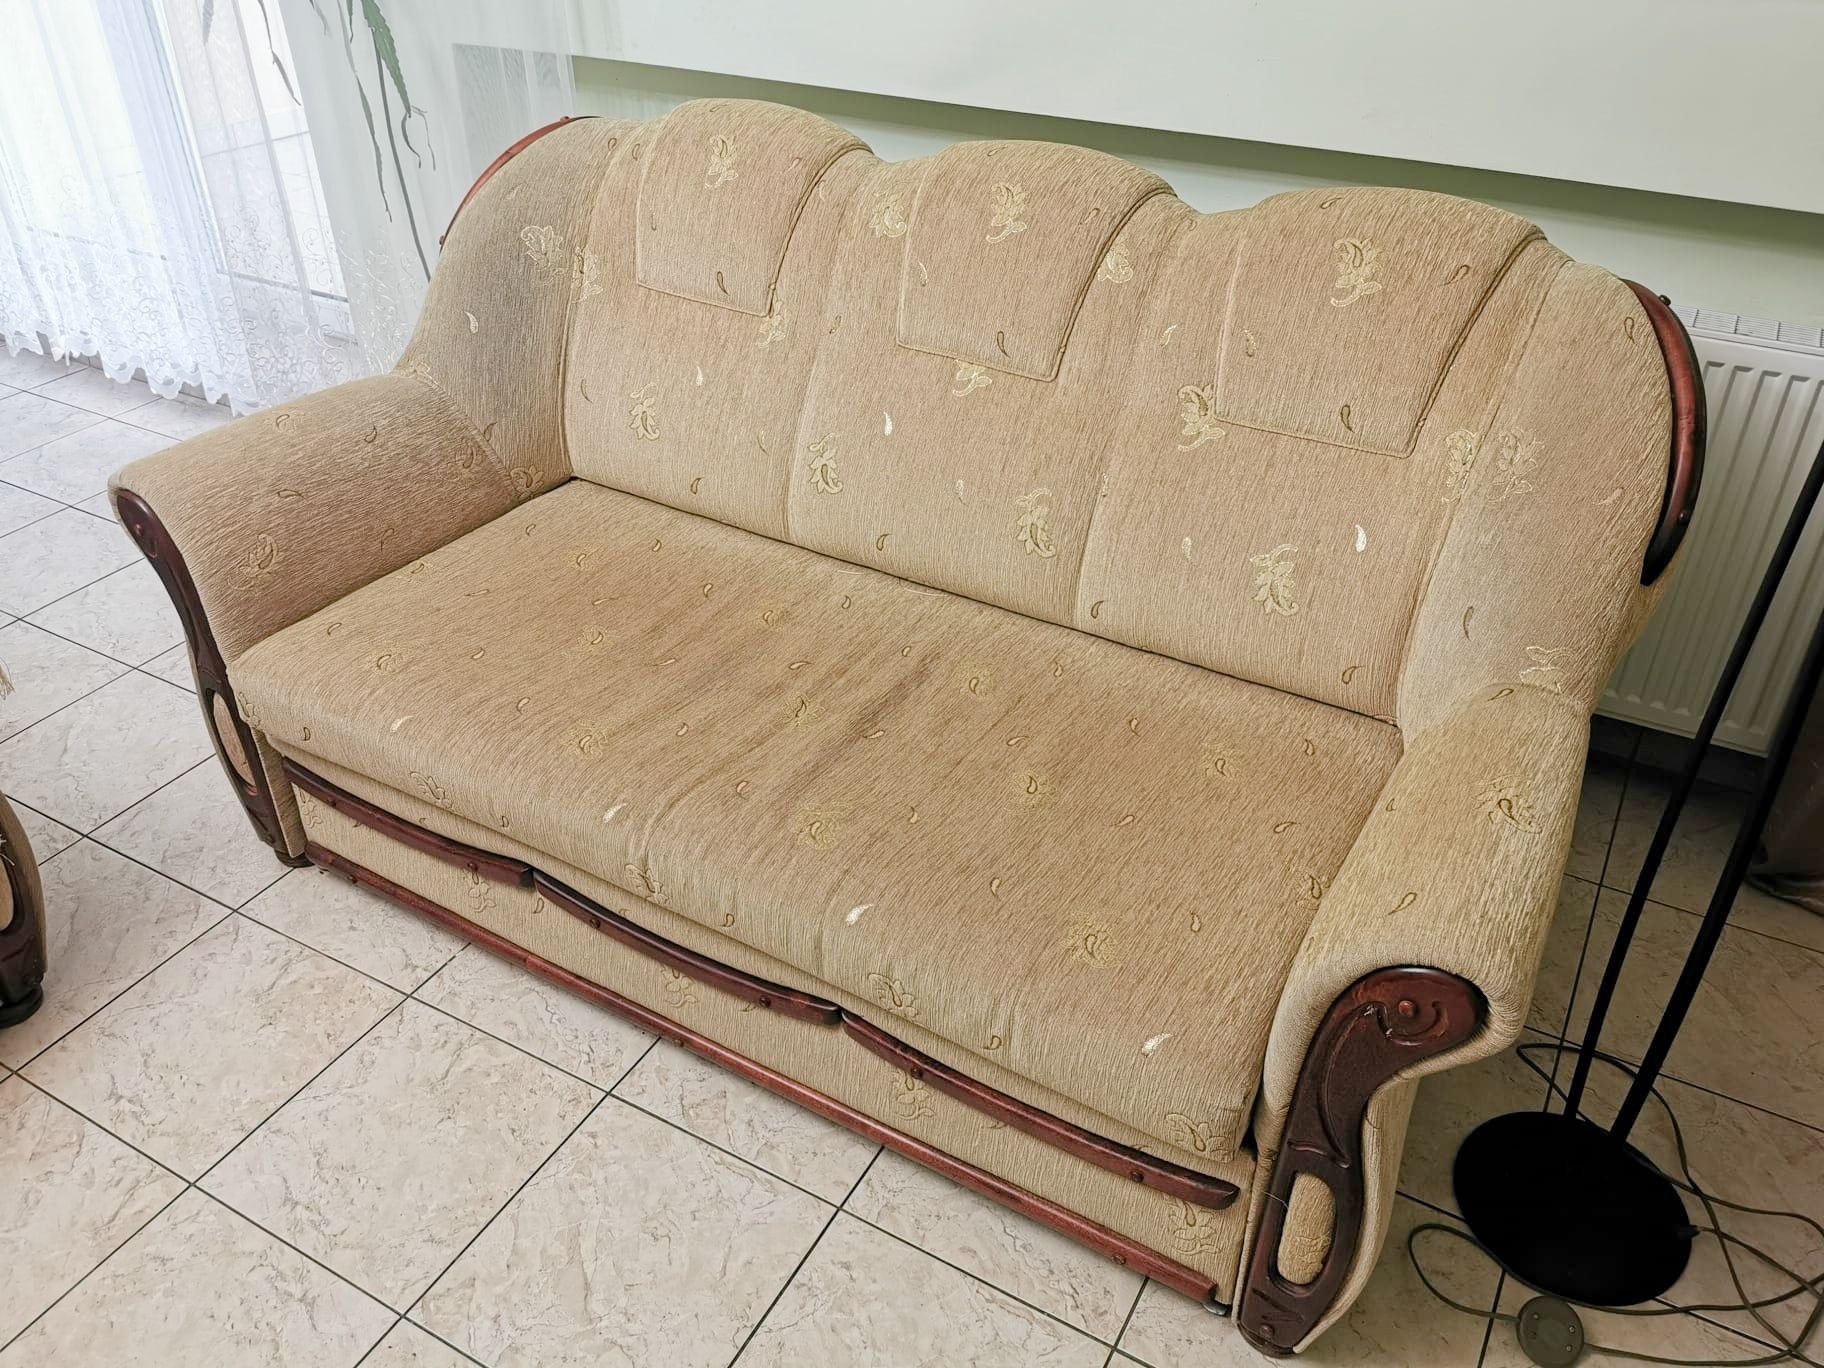 Sofa, kanapa 3 osobowa, wypoczynek + narzuta GRATIS